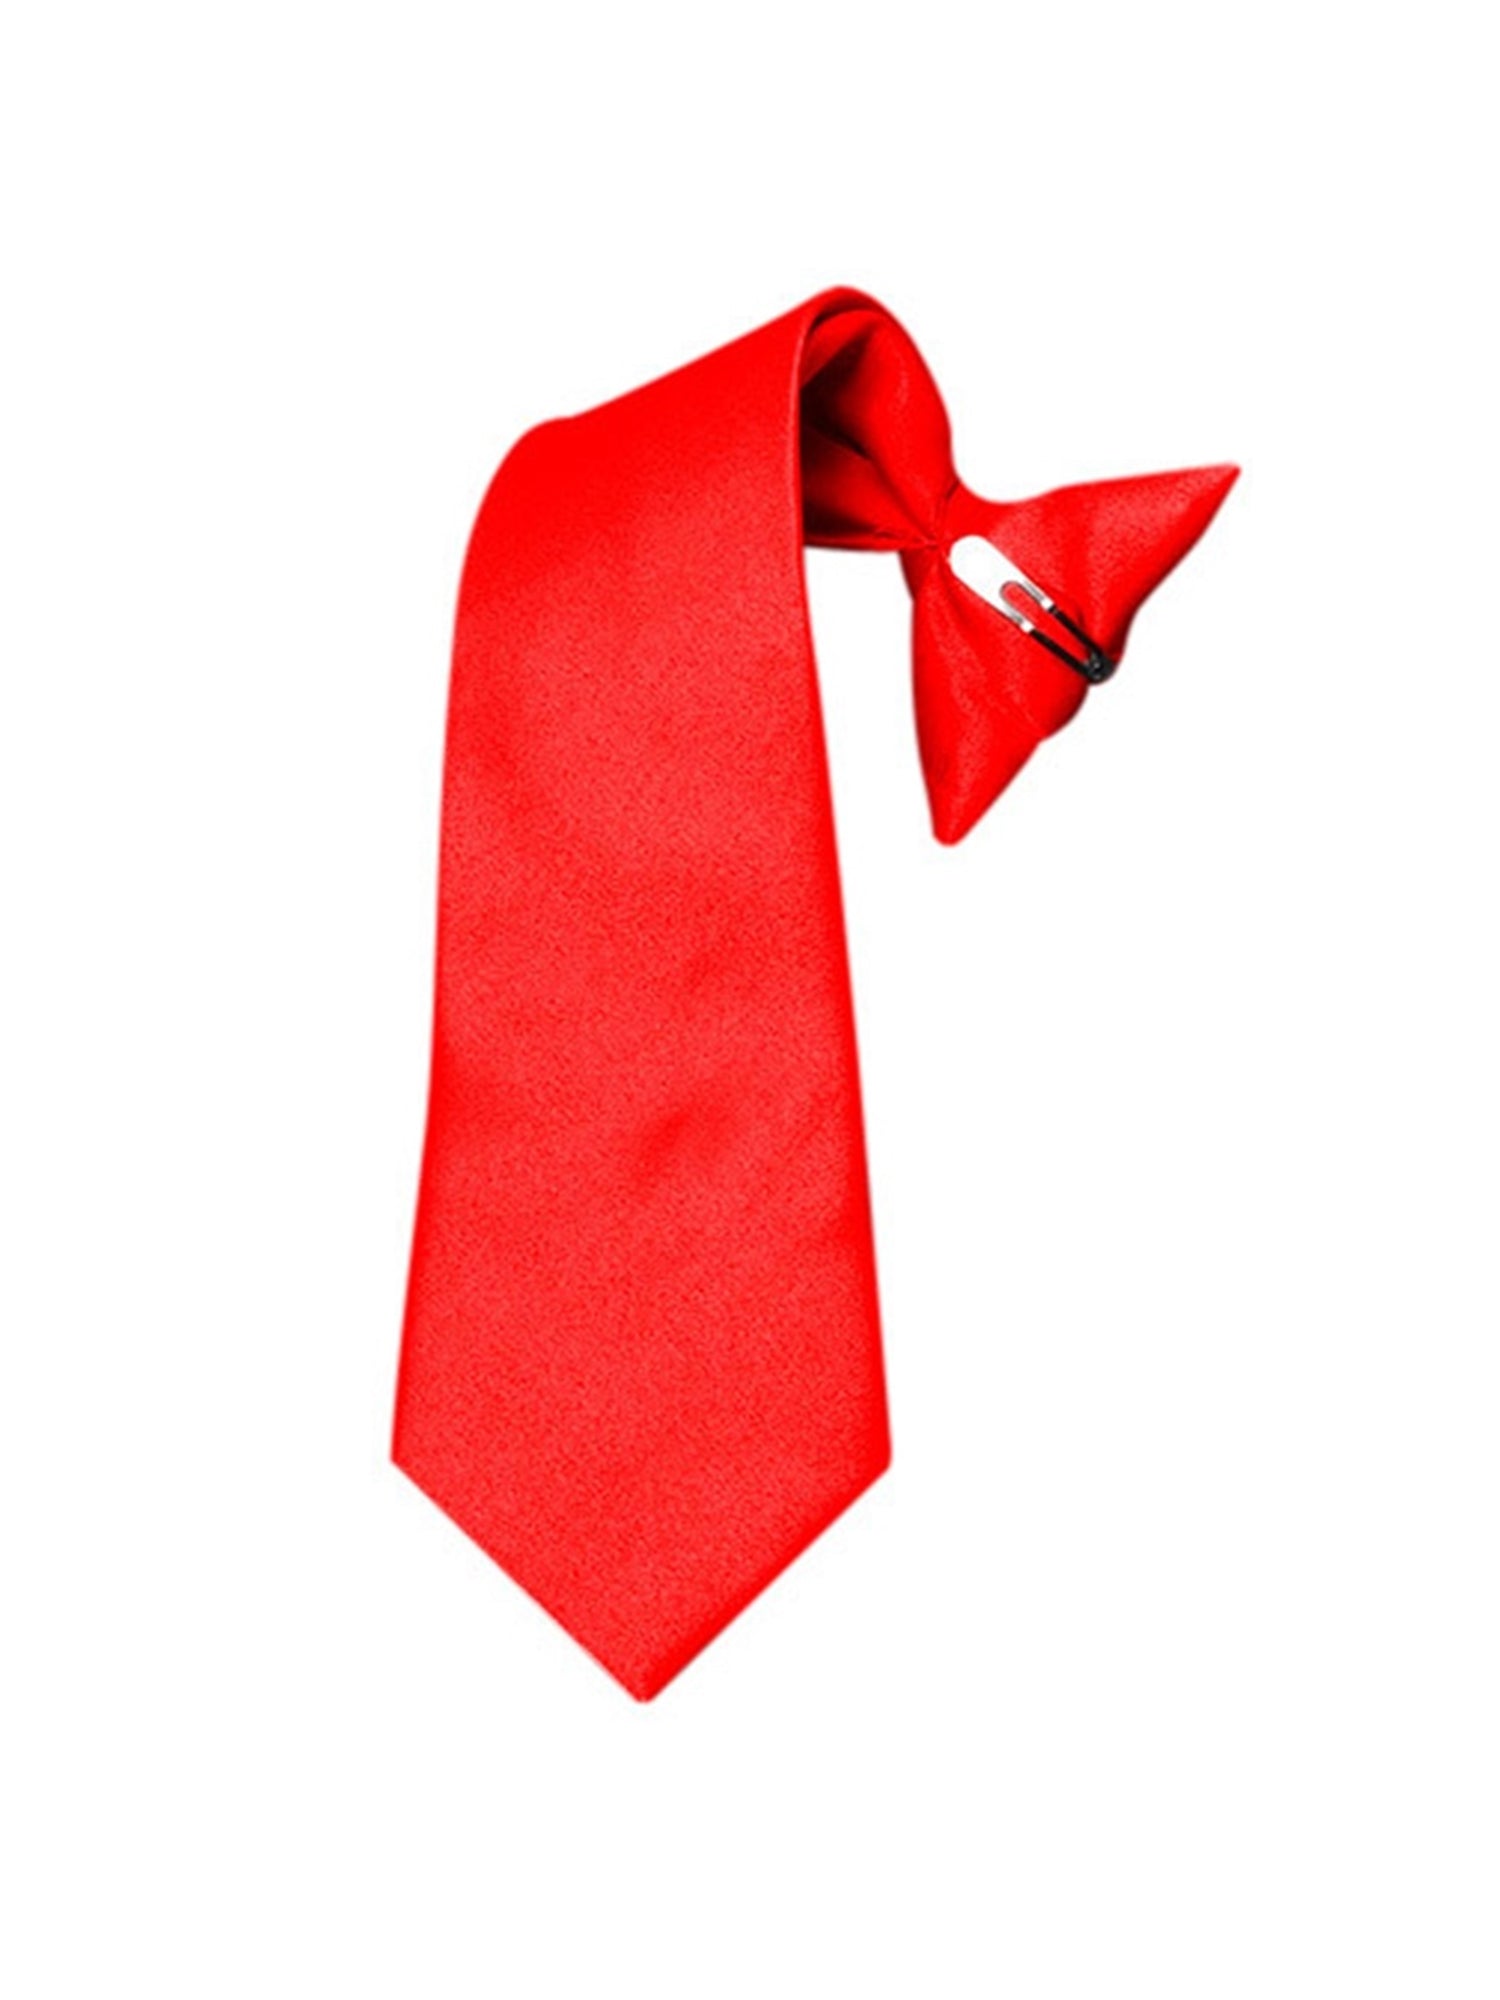 Boy's Solid Color Pre-tied Clip On Neck Tie Neck Tie TheDapperTie Red 8" x 2.5" 